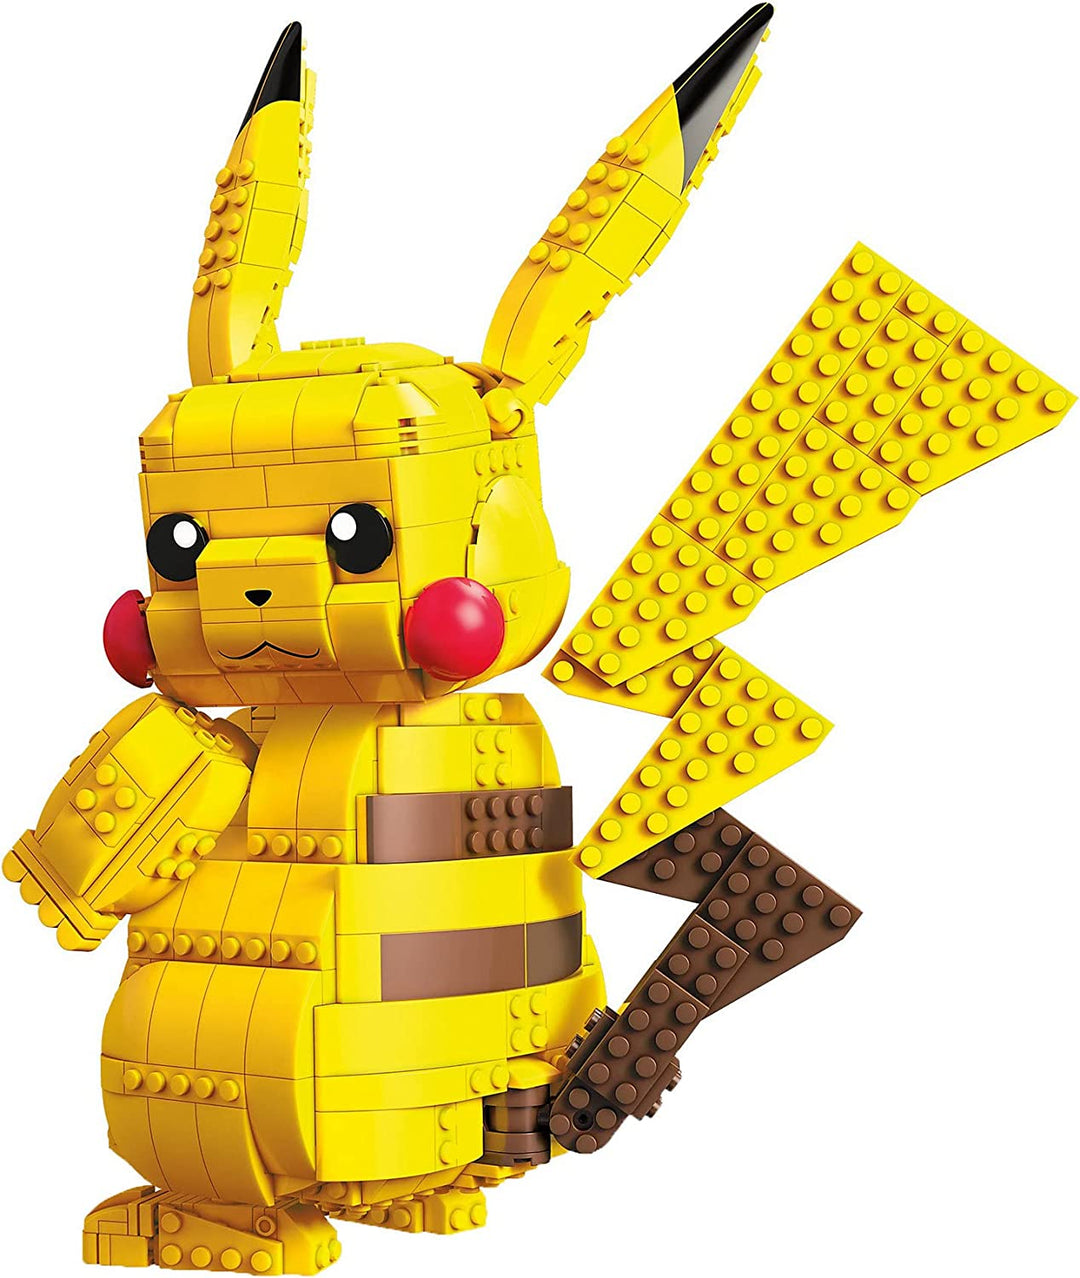 Mattel Mega Construx Pokemon Jumbo Pikachu